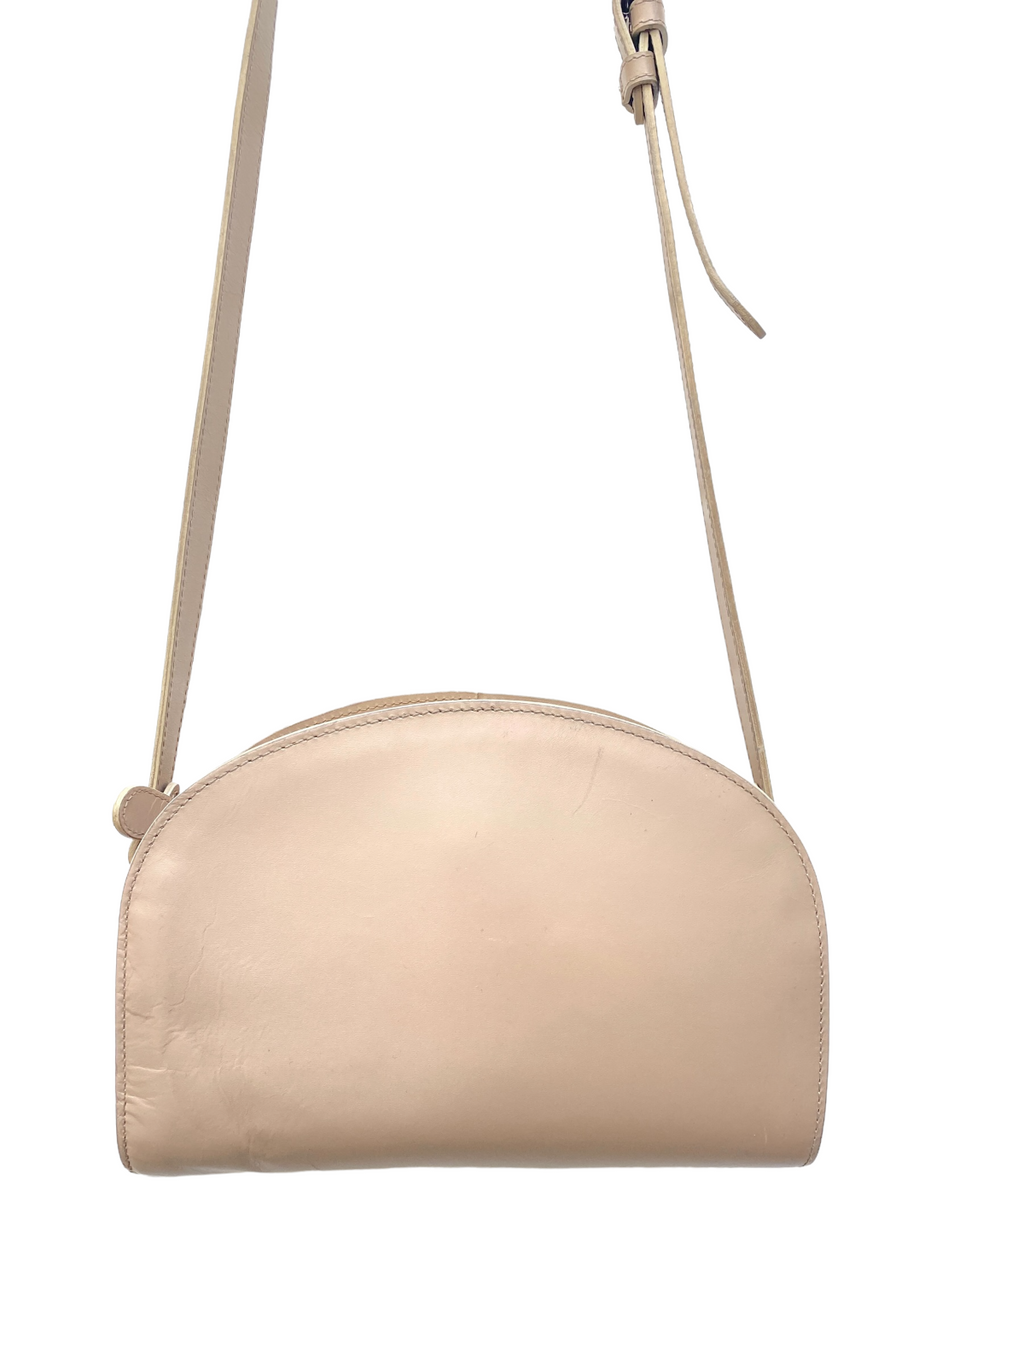 Beige / Light pink Half moon Leather bag